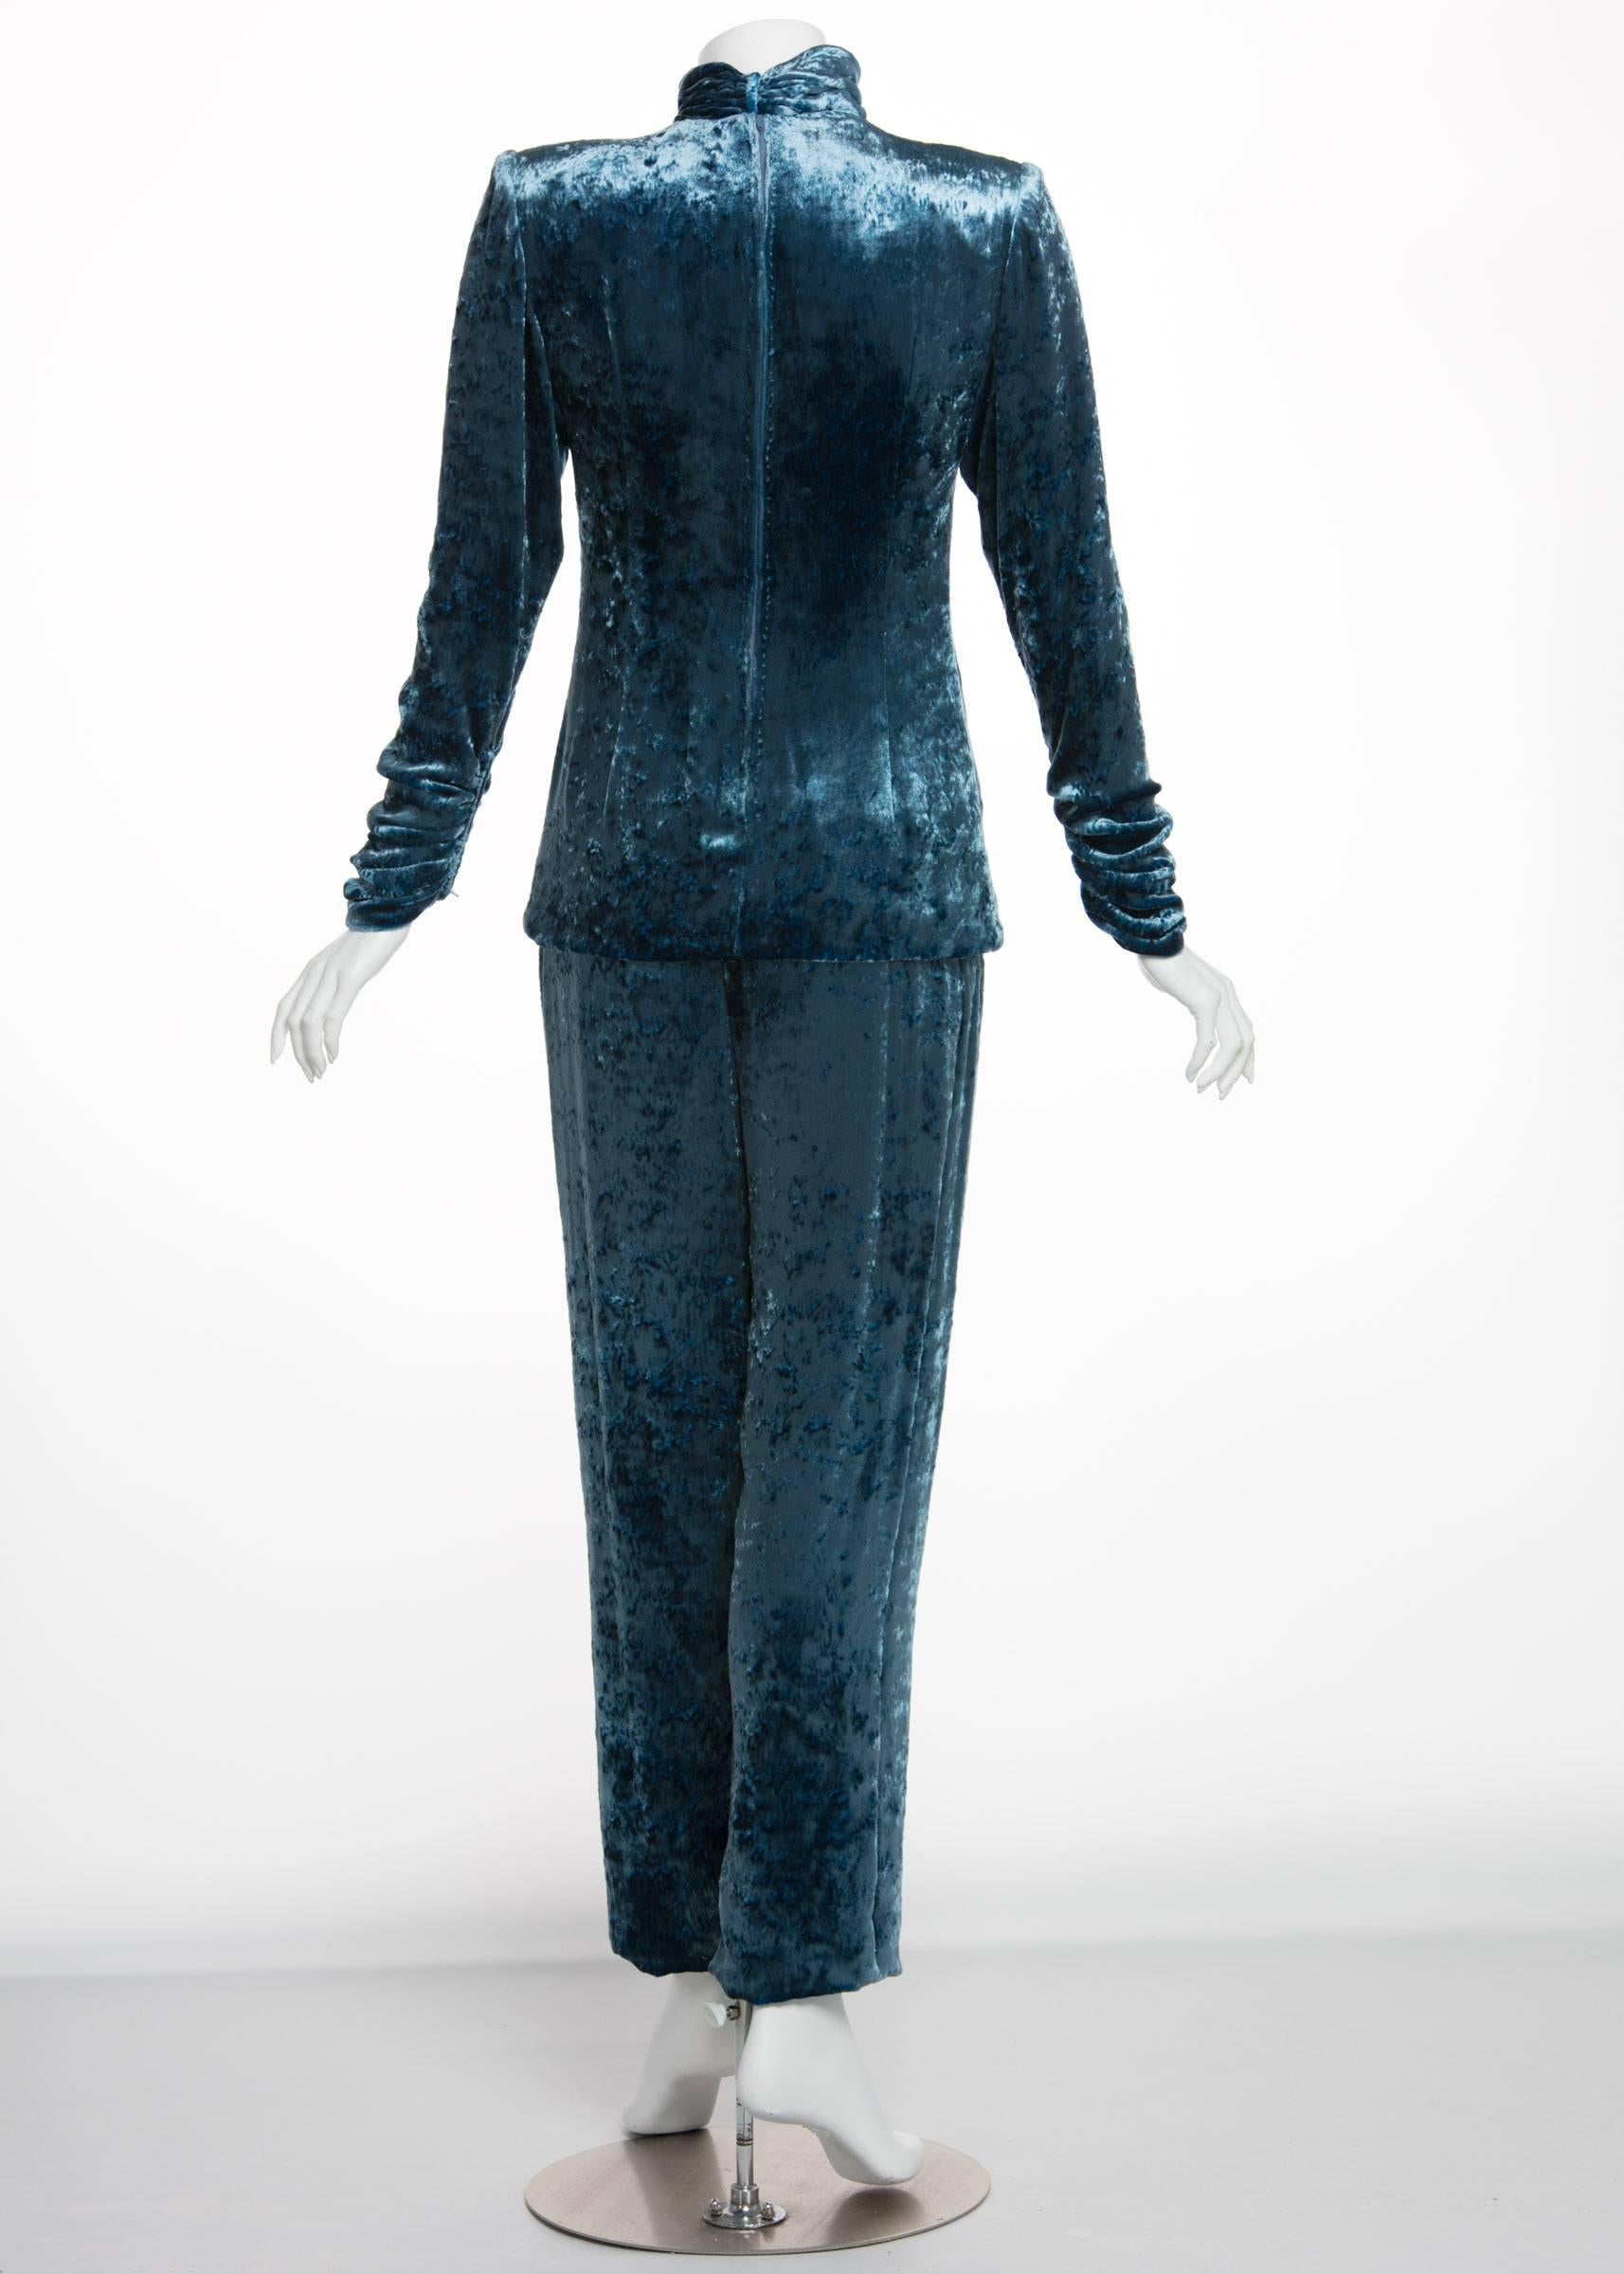 Galanos Couture Blue Velvet Evening Tunic Top Pants Suit, 1980s  3